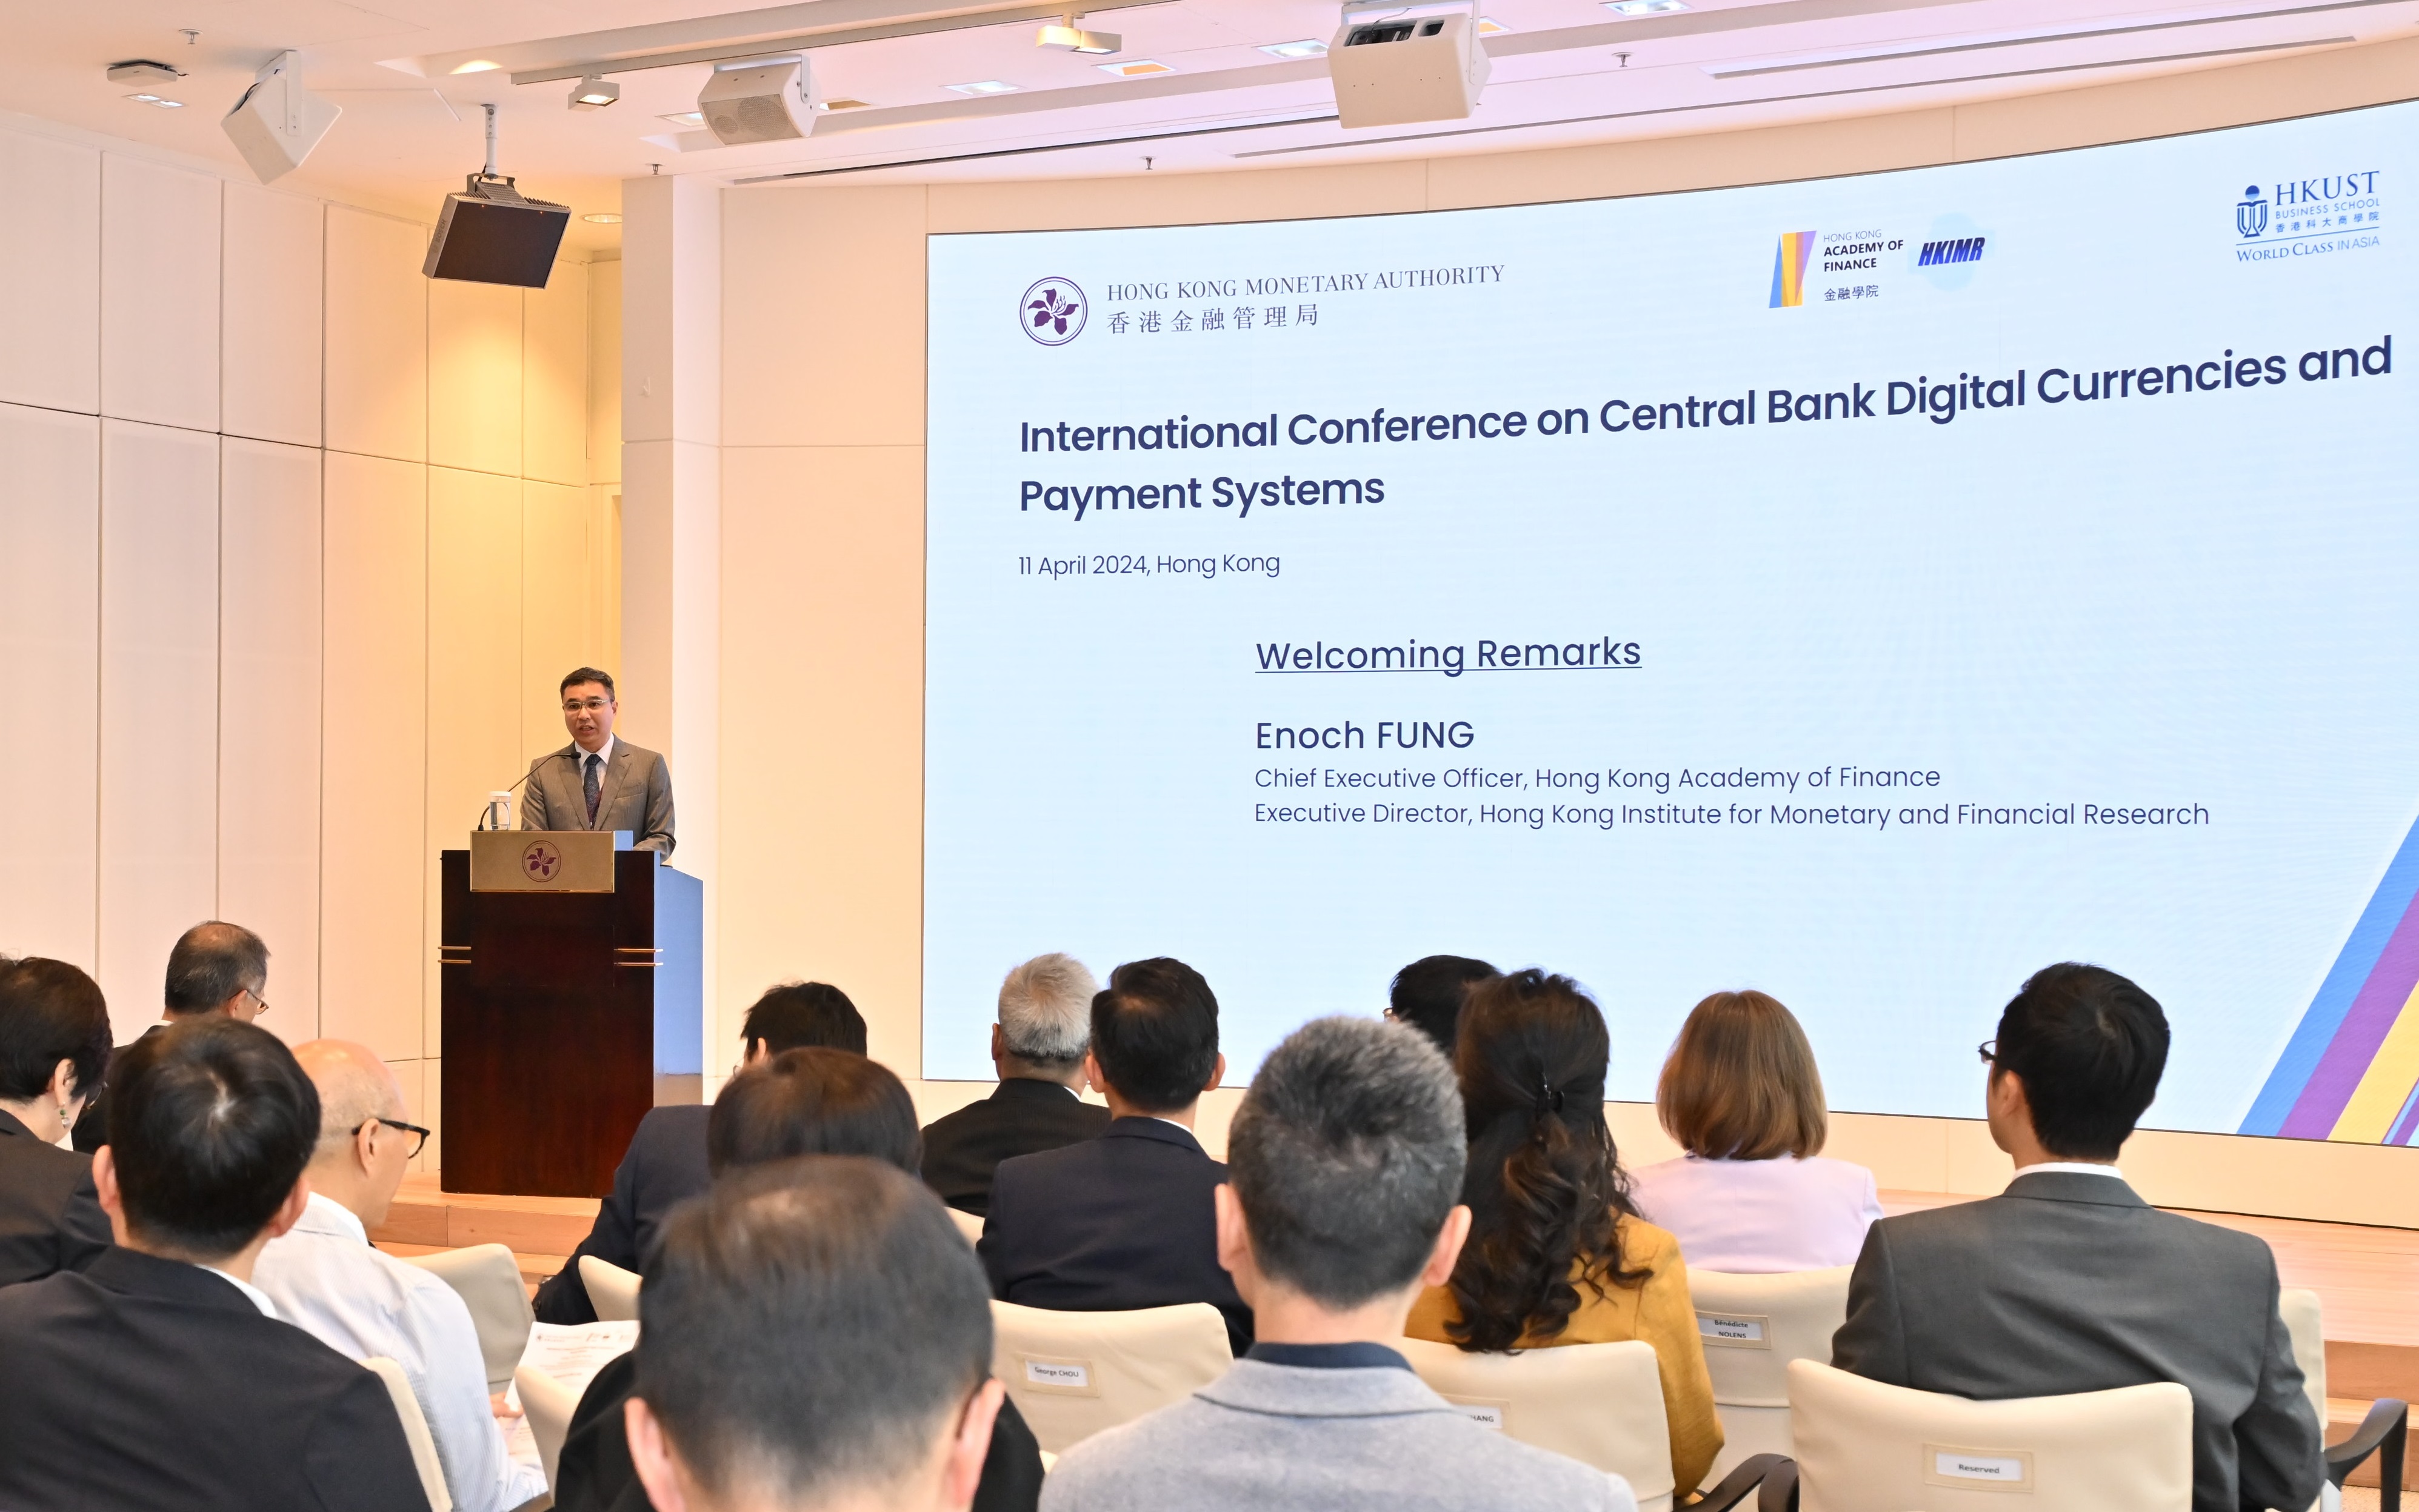 金融学院行政总裁及香港货币及金融研究中心执行主任冯殷诺先生于会上致欢迎词。